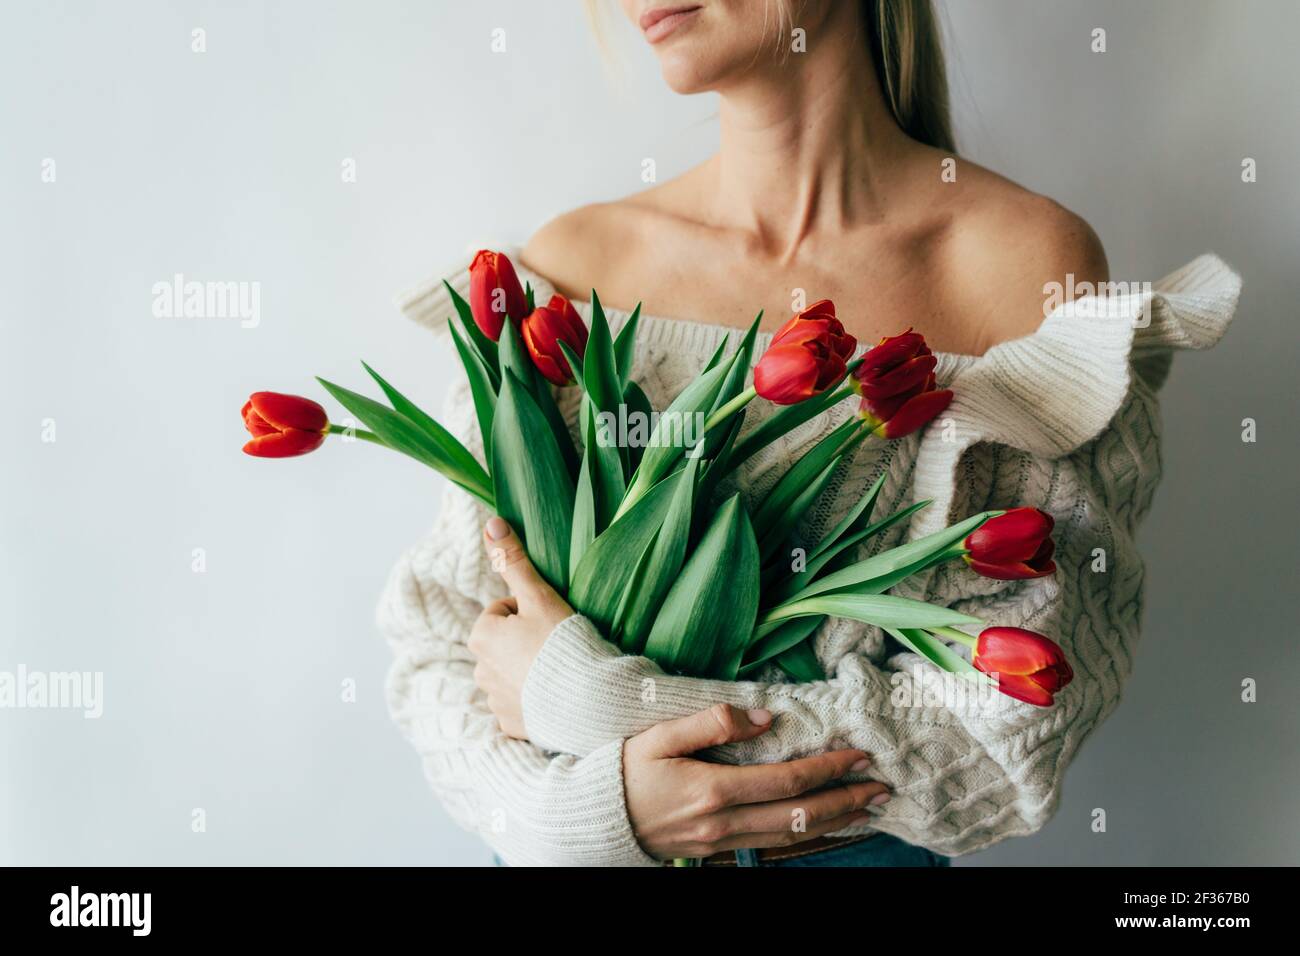 Una mujer joven sostiene un hermoso ramo de tulipanes rojos en sus manos. Foto de stock